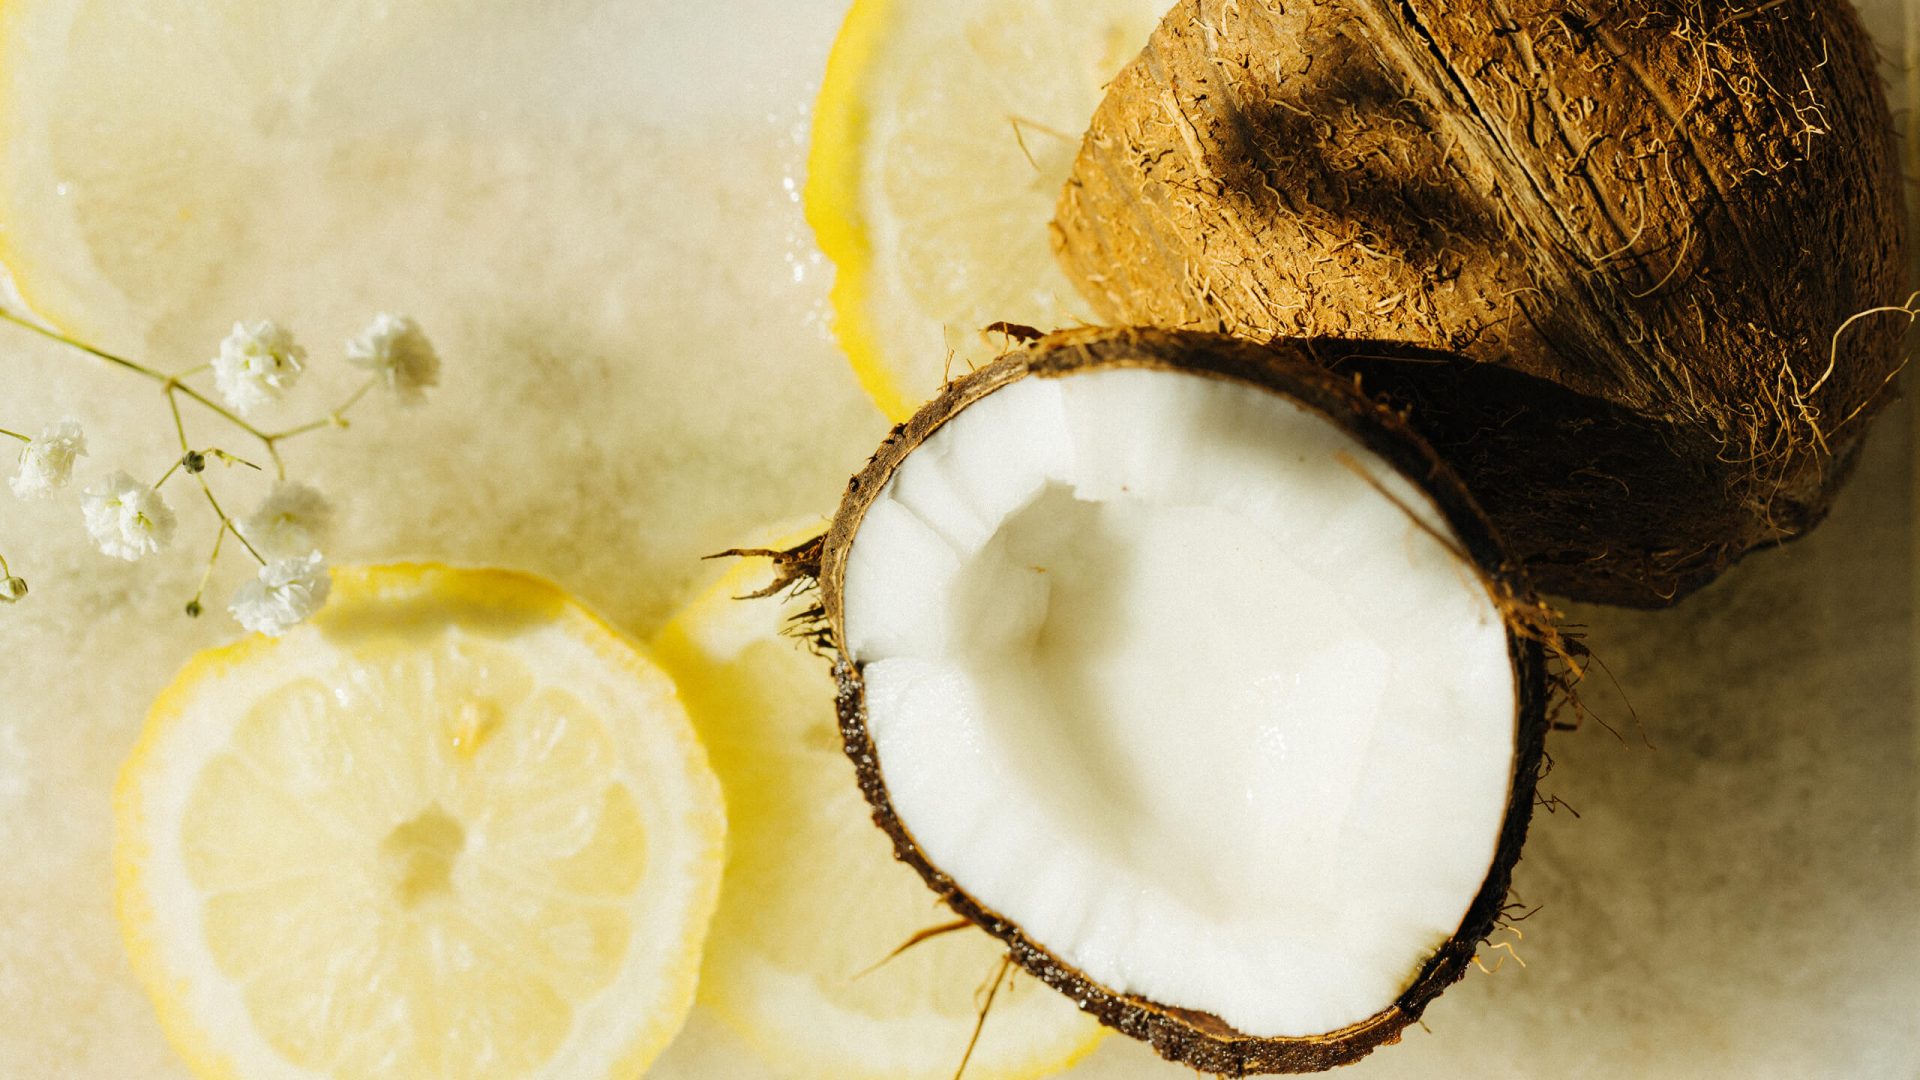 Kokoswasser-Zitrone die Limo 